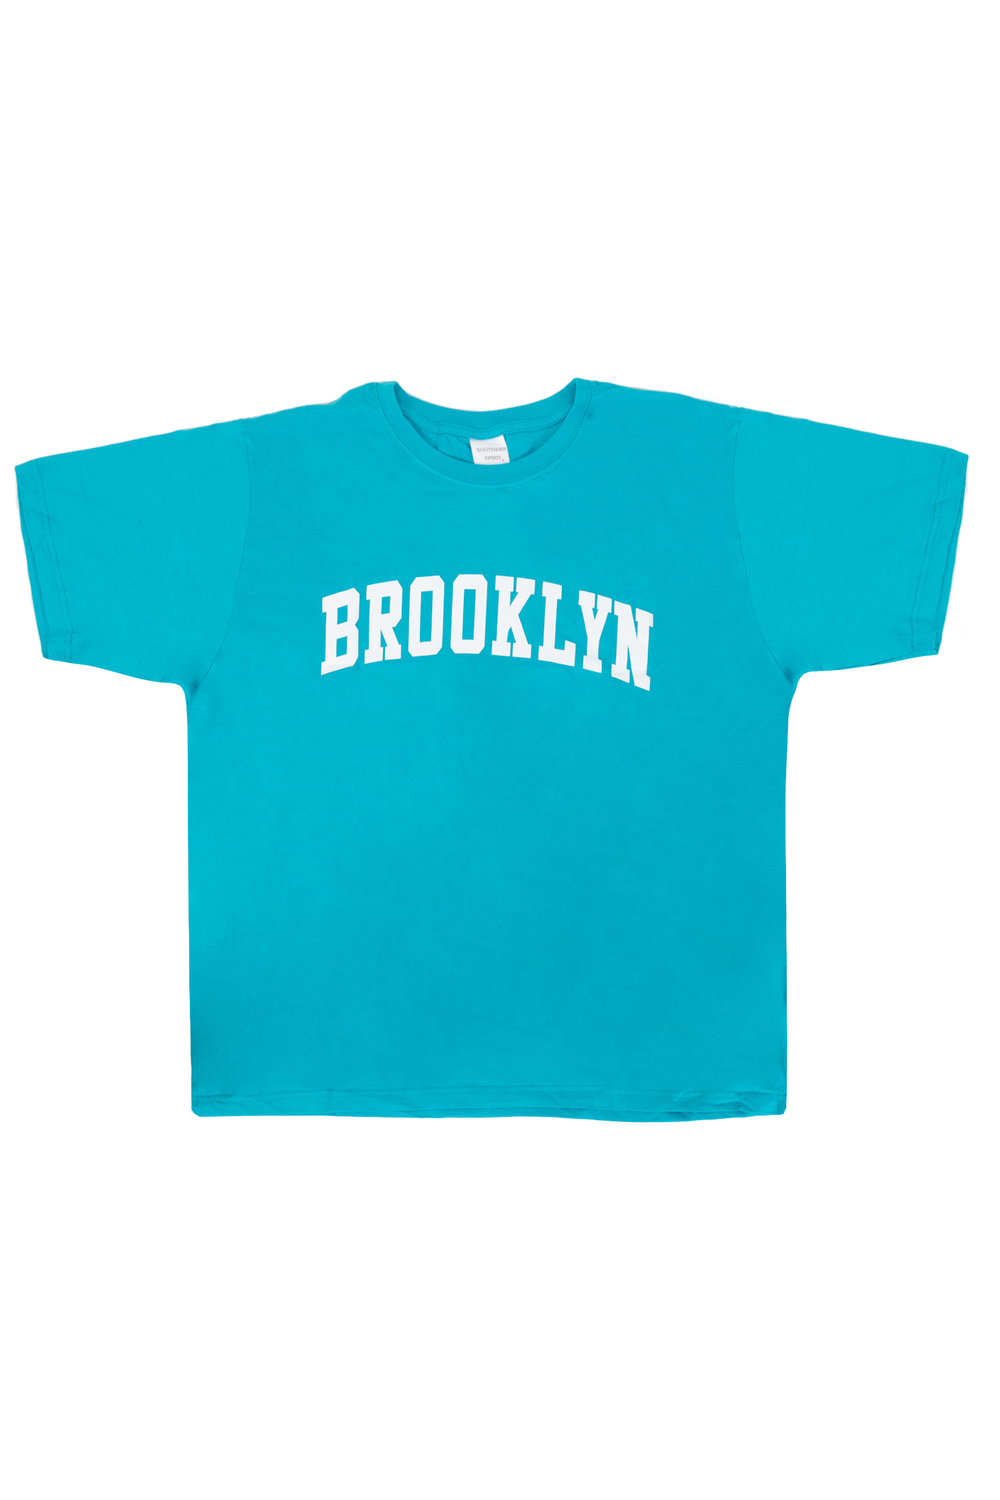 Brooklyn, crewneck cotton t-shirt - Aqua - Plus Size